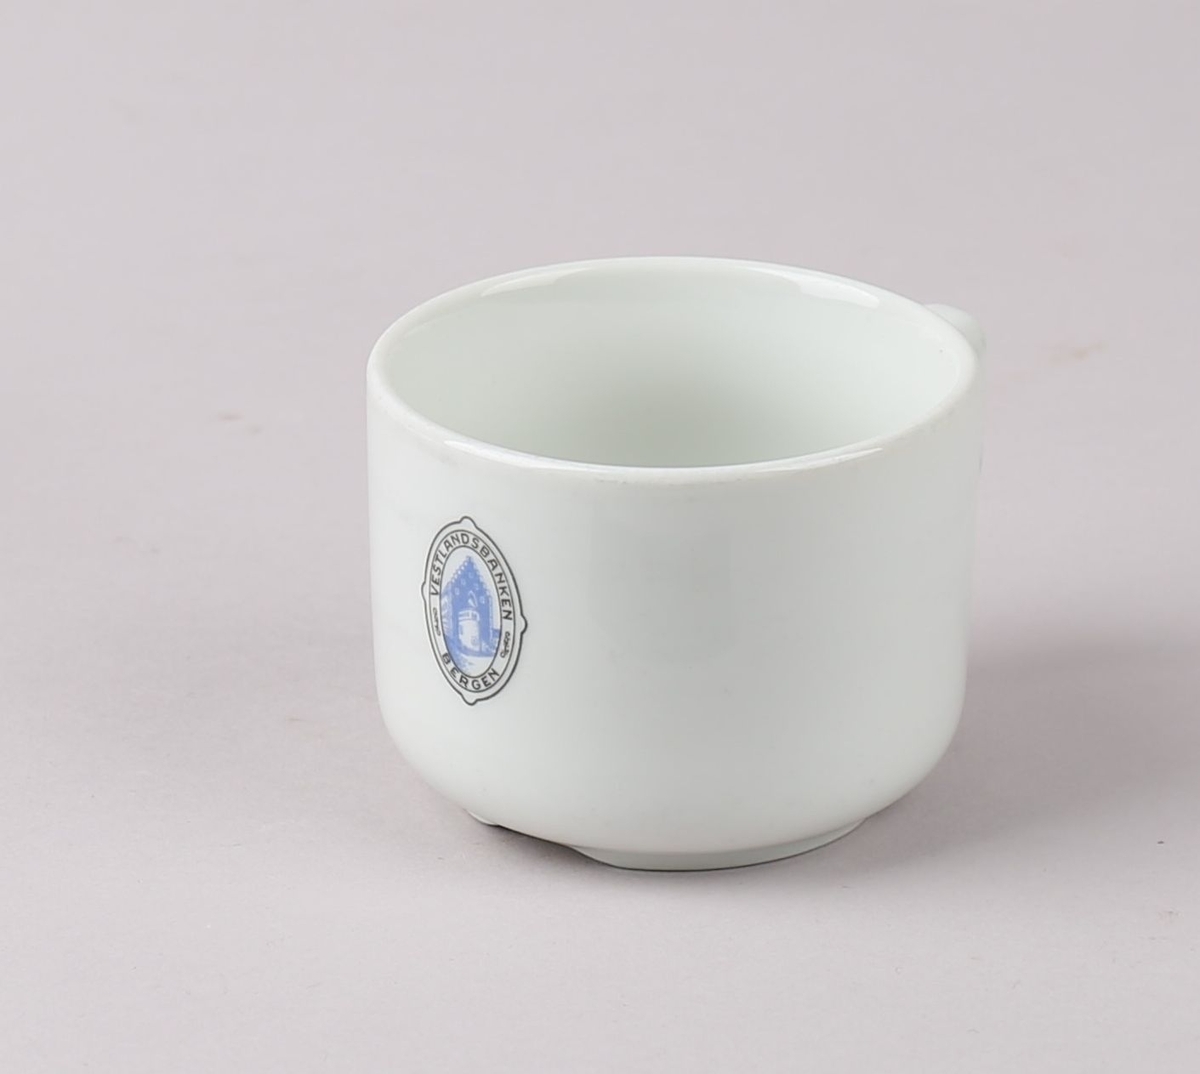 Kaffekopp, del av kaffeservise, 1 kuvert. Koppen har sylindrisk form. Produsert i hvit porselen med emblem på korpus, for Vestlandsbanken i Bergen, med tegning av Håkonshallen i emblemet.